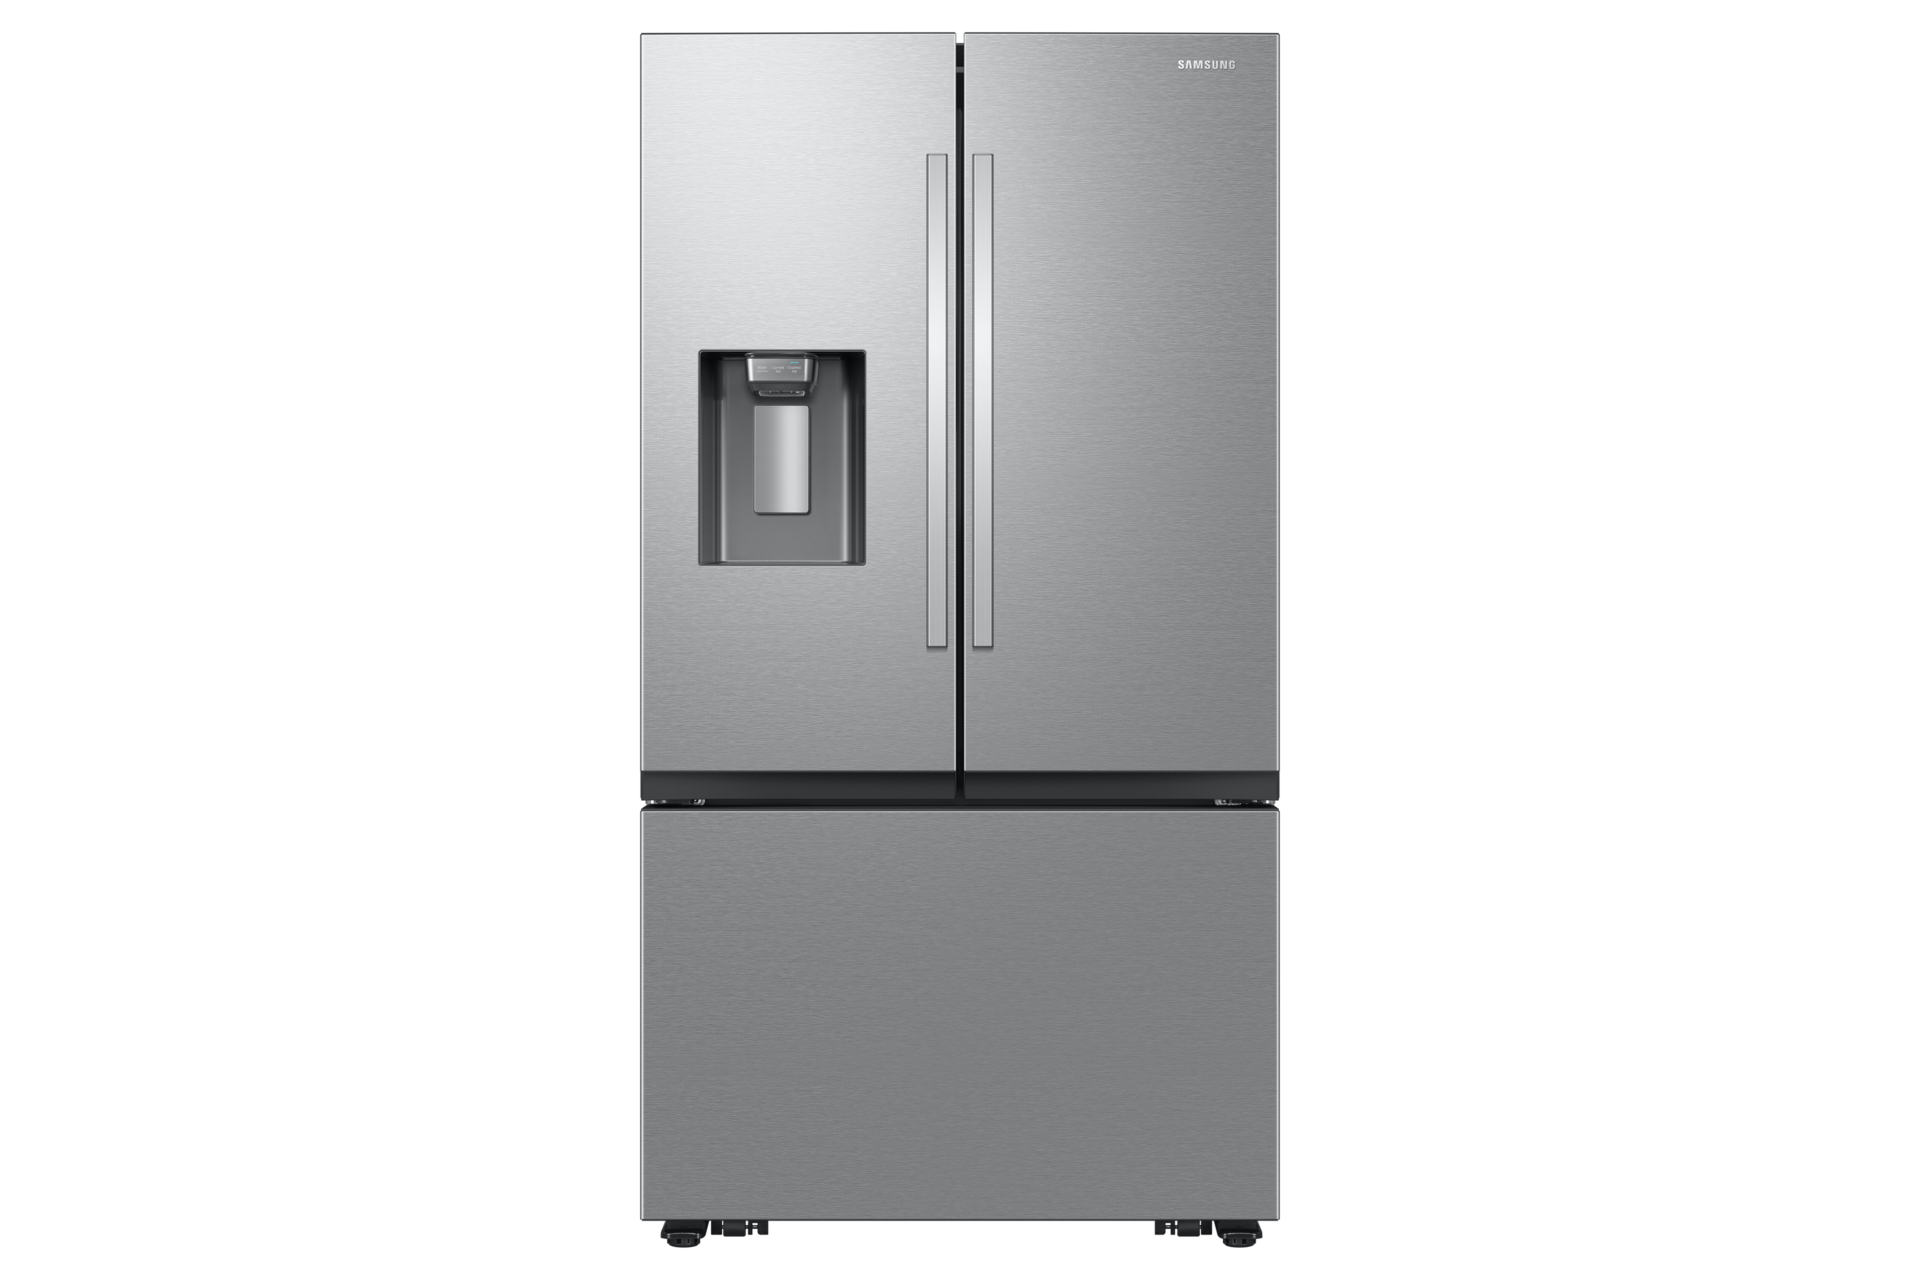 Grand frigo réfrigérateur professionnel grande capacité sans